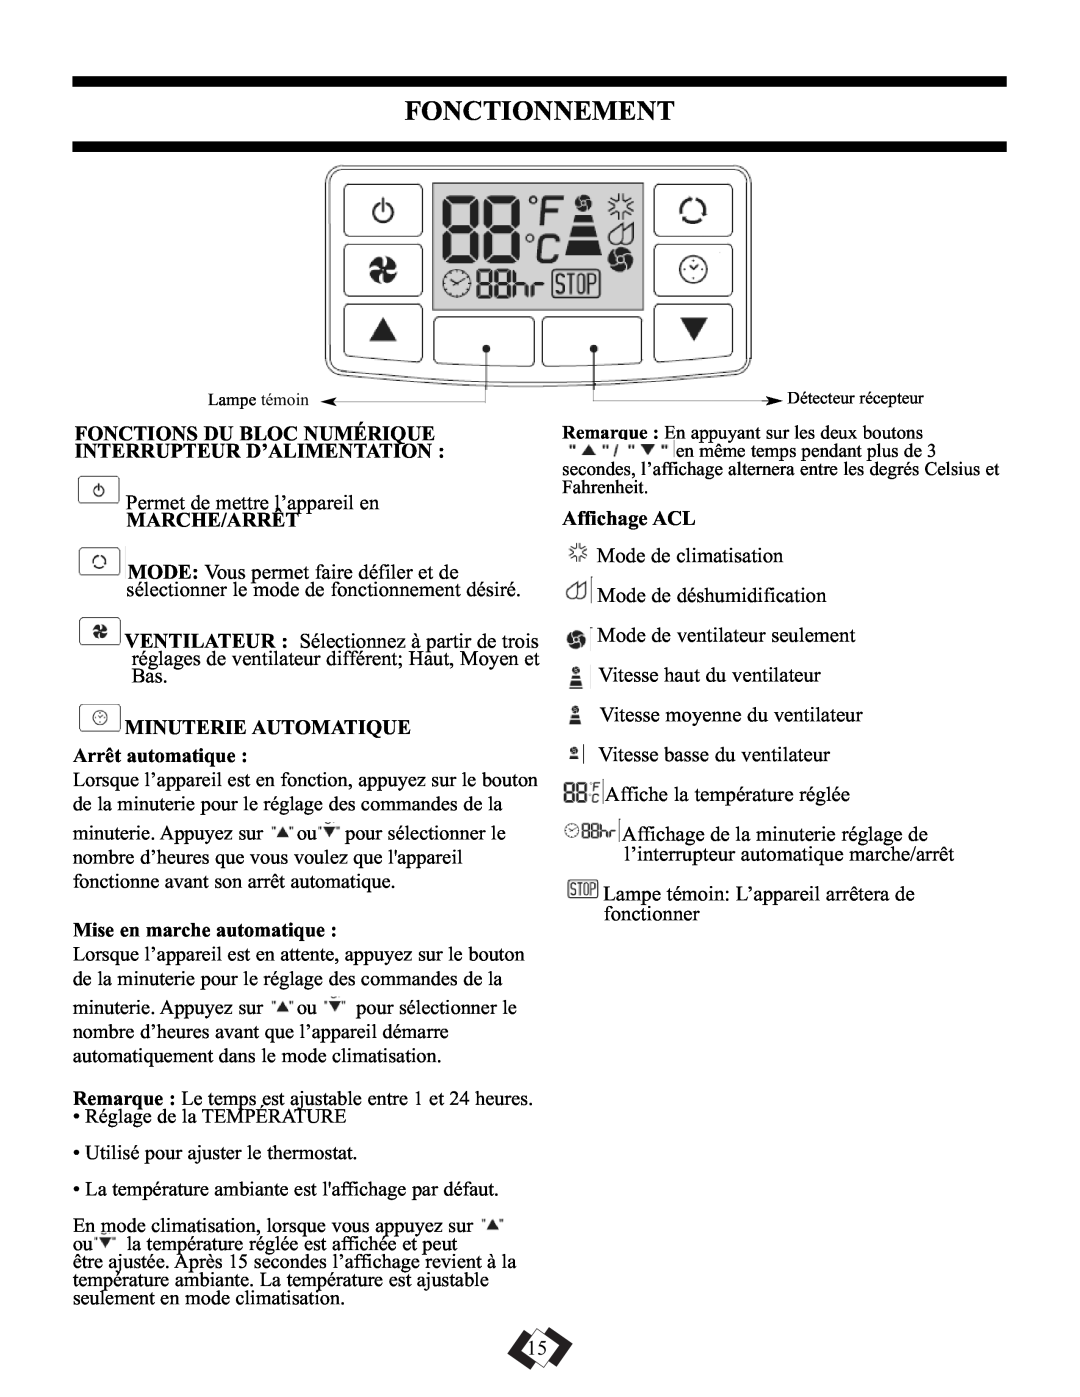 Danby DPAC10010, DPAC9010 manual Fonctionnement, Marche/Arrêt, Minuterie Automatique, Affichage ACL 